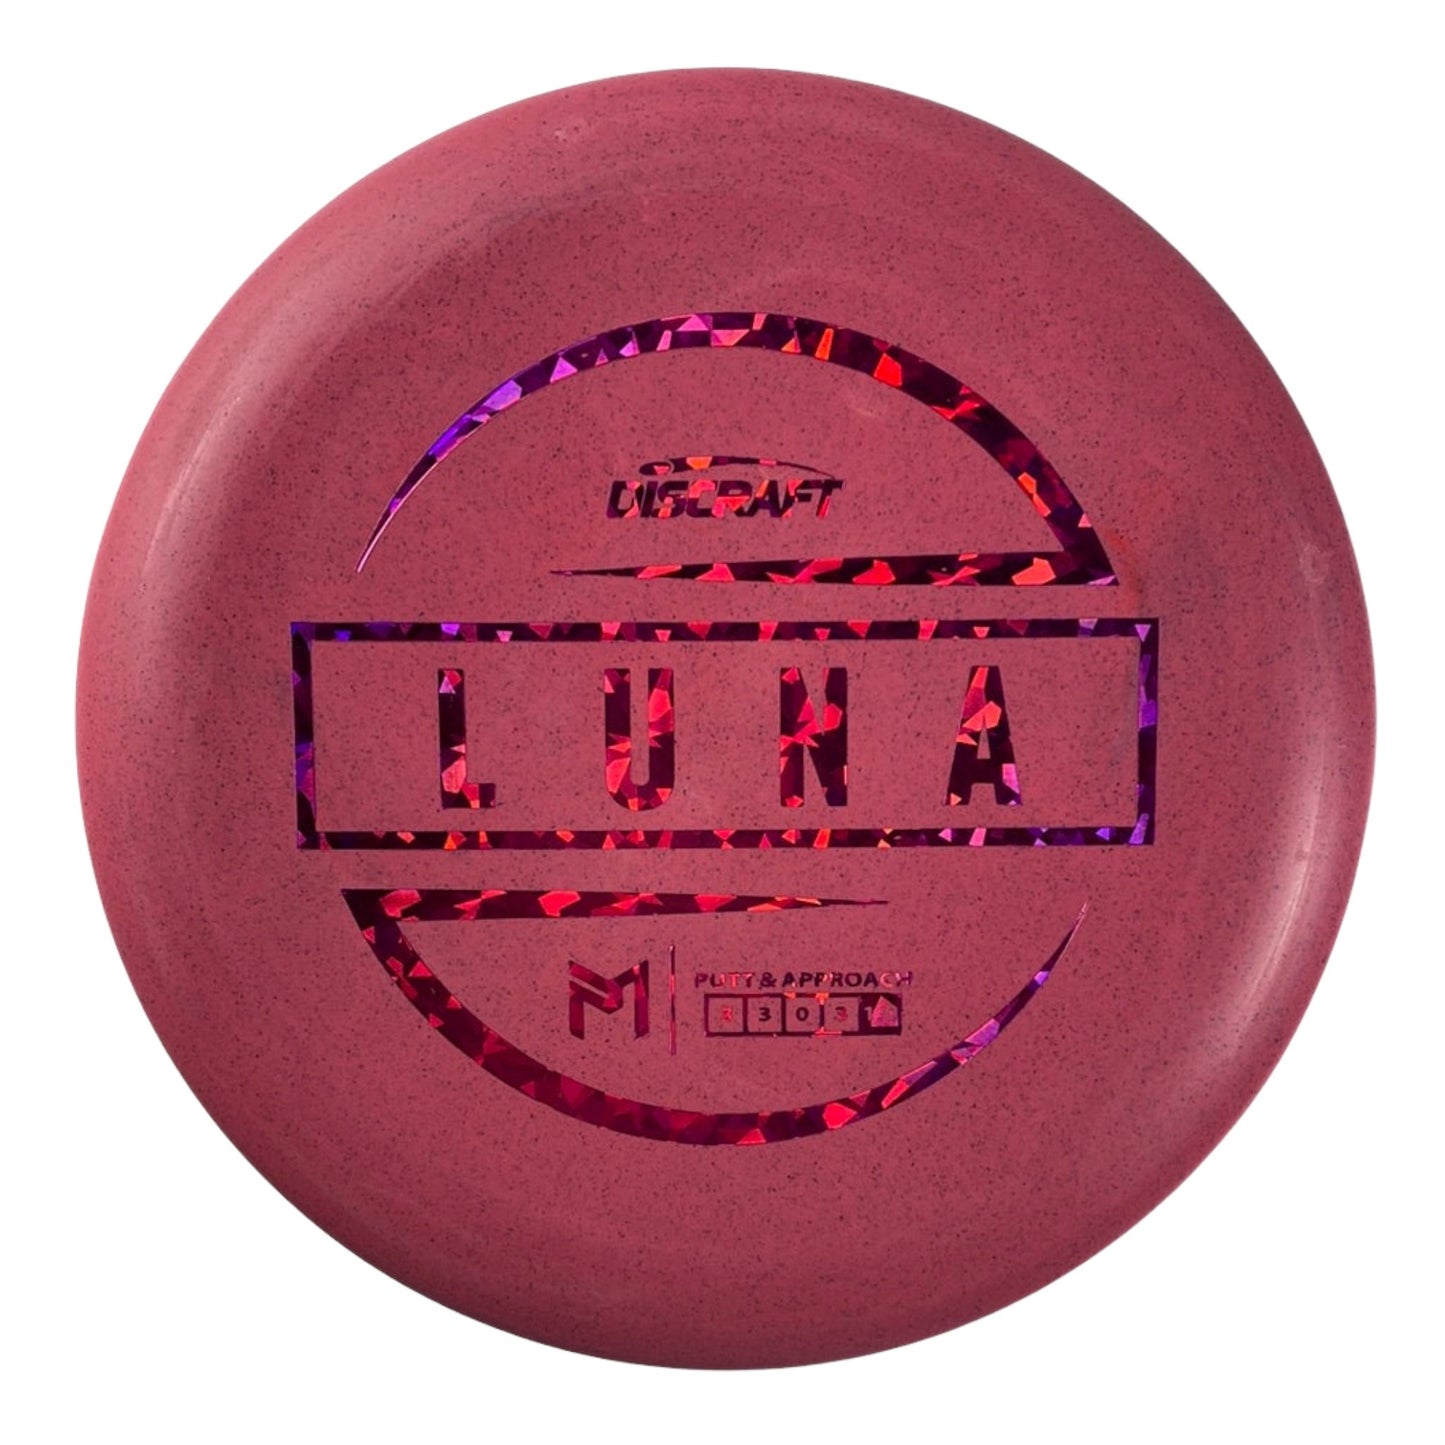 Discraft Luna | Jawbreaker Blend | Red/Pink 174g (Paul McBeth) Disc Golf